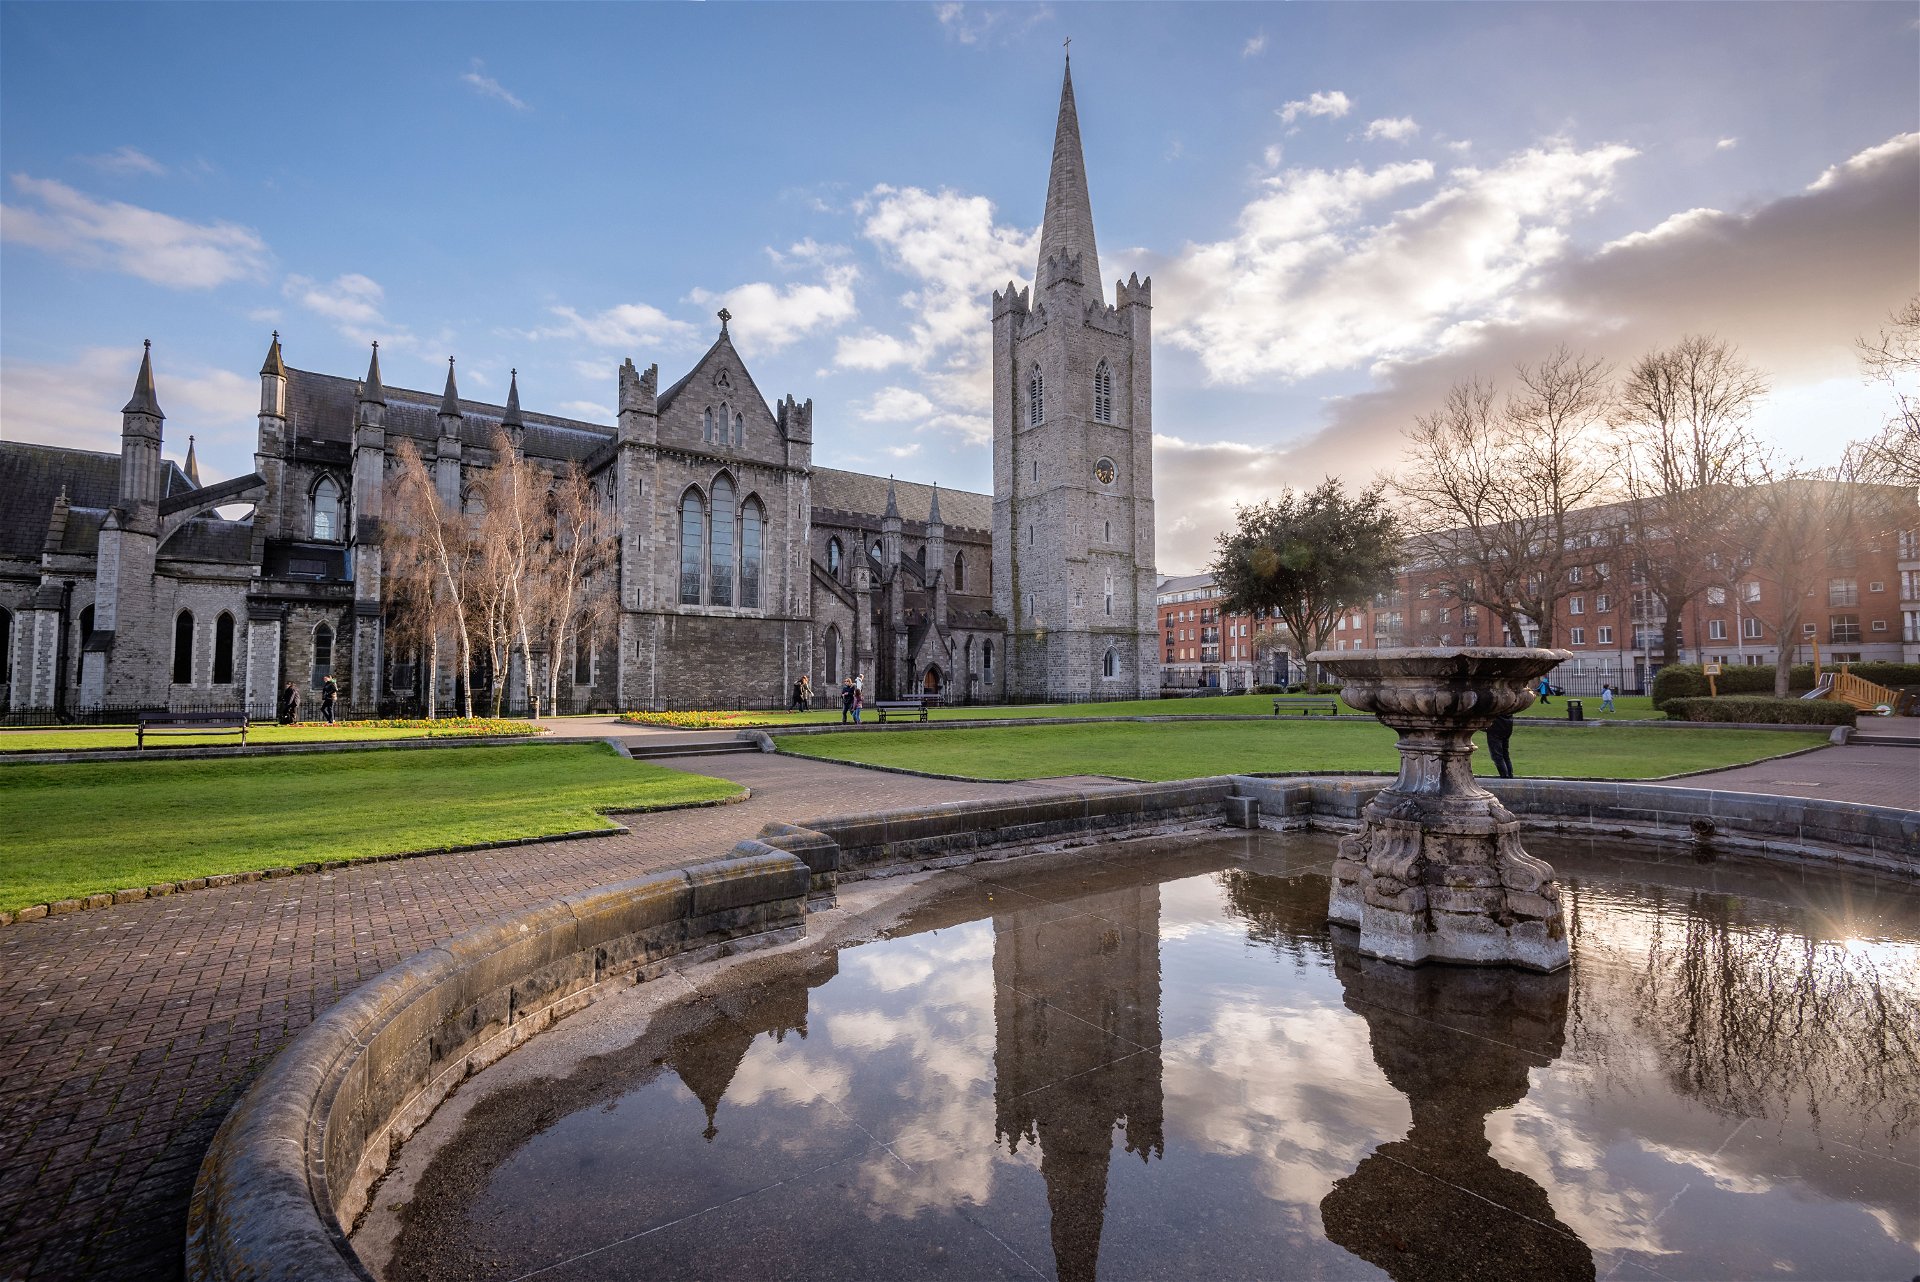 St Patrick’s Cathedral: Seit 1191 »Ihr Kirchturm stammt aus dem 14. Jahrhundert und markiert den Rand der mittel-alterlichen Stadt. Ein historisch komplexes, vielschichtiges Stadtviertel, mit der perfekt -erhaltenen Marsh’s Library - als verstecktes Juwel.«